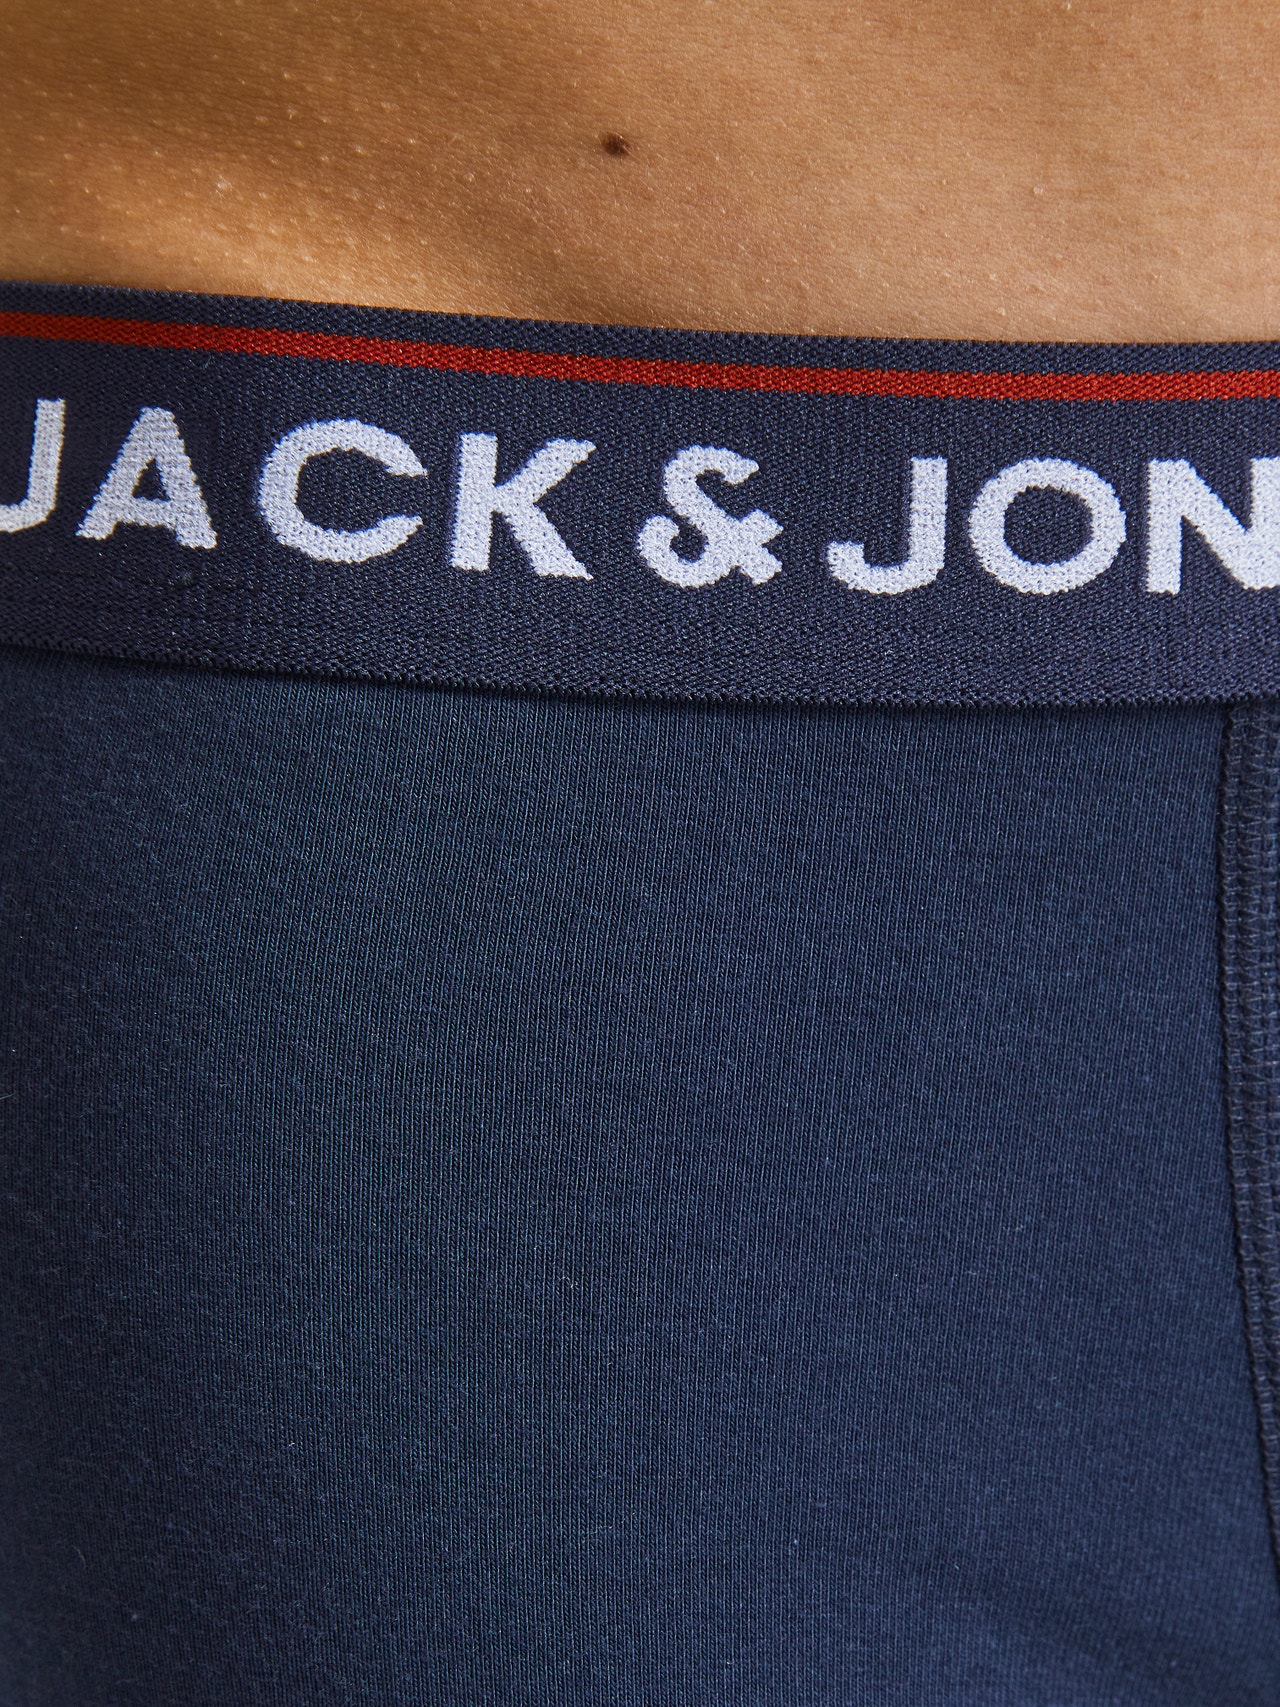 Jack & Jones 5-pack Trunks -Navy Blazer - 12217070